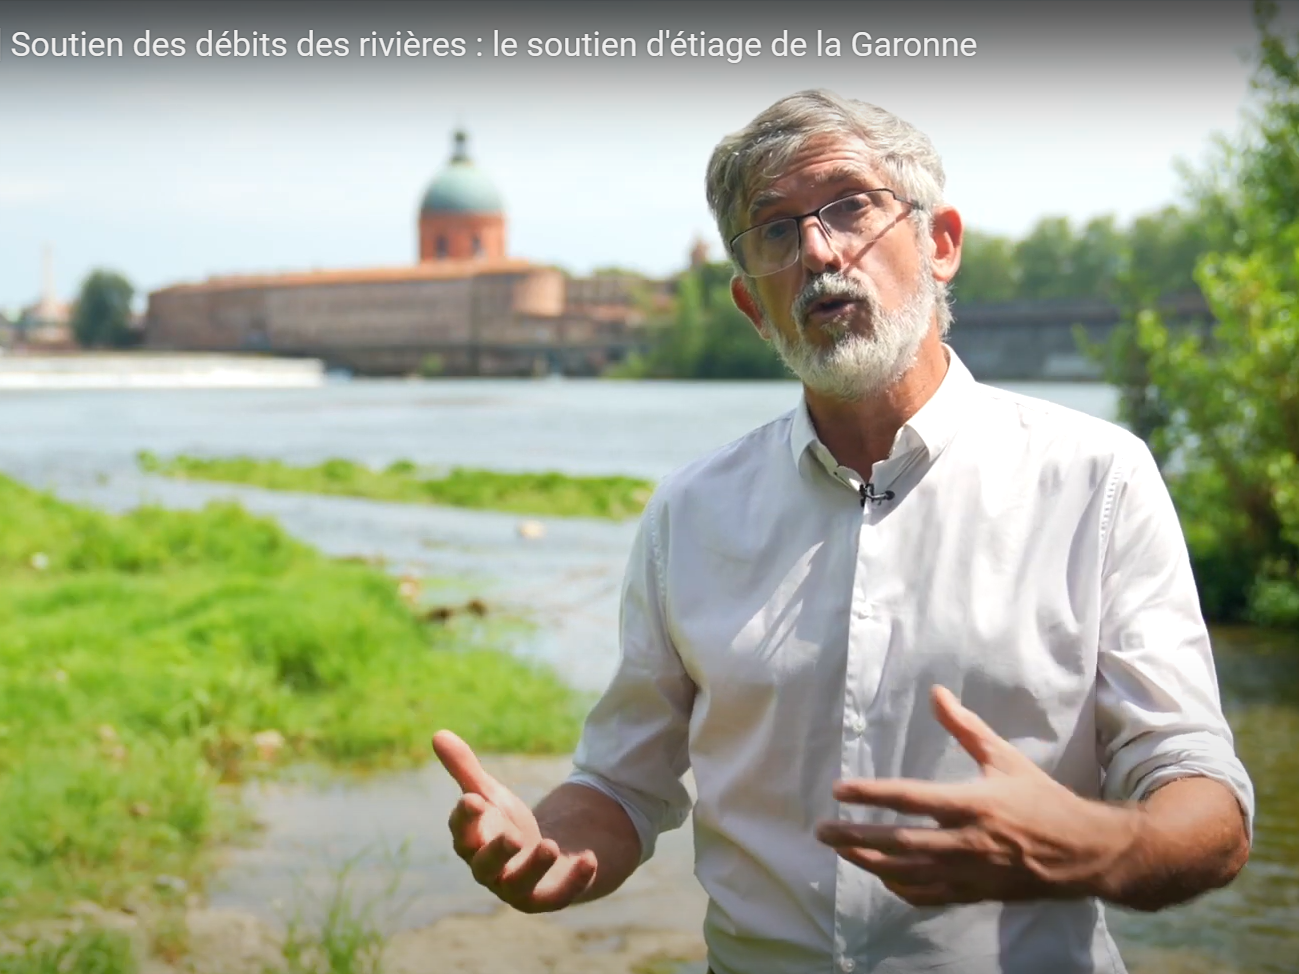 Afficher la vidéo Soutien des débits des rivières : l'exemple du soutien d'étiage de la Garonne